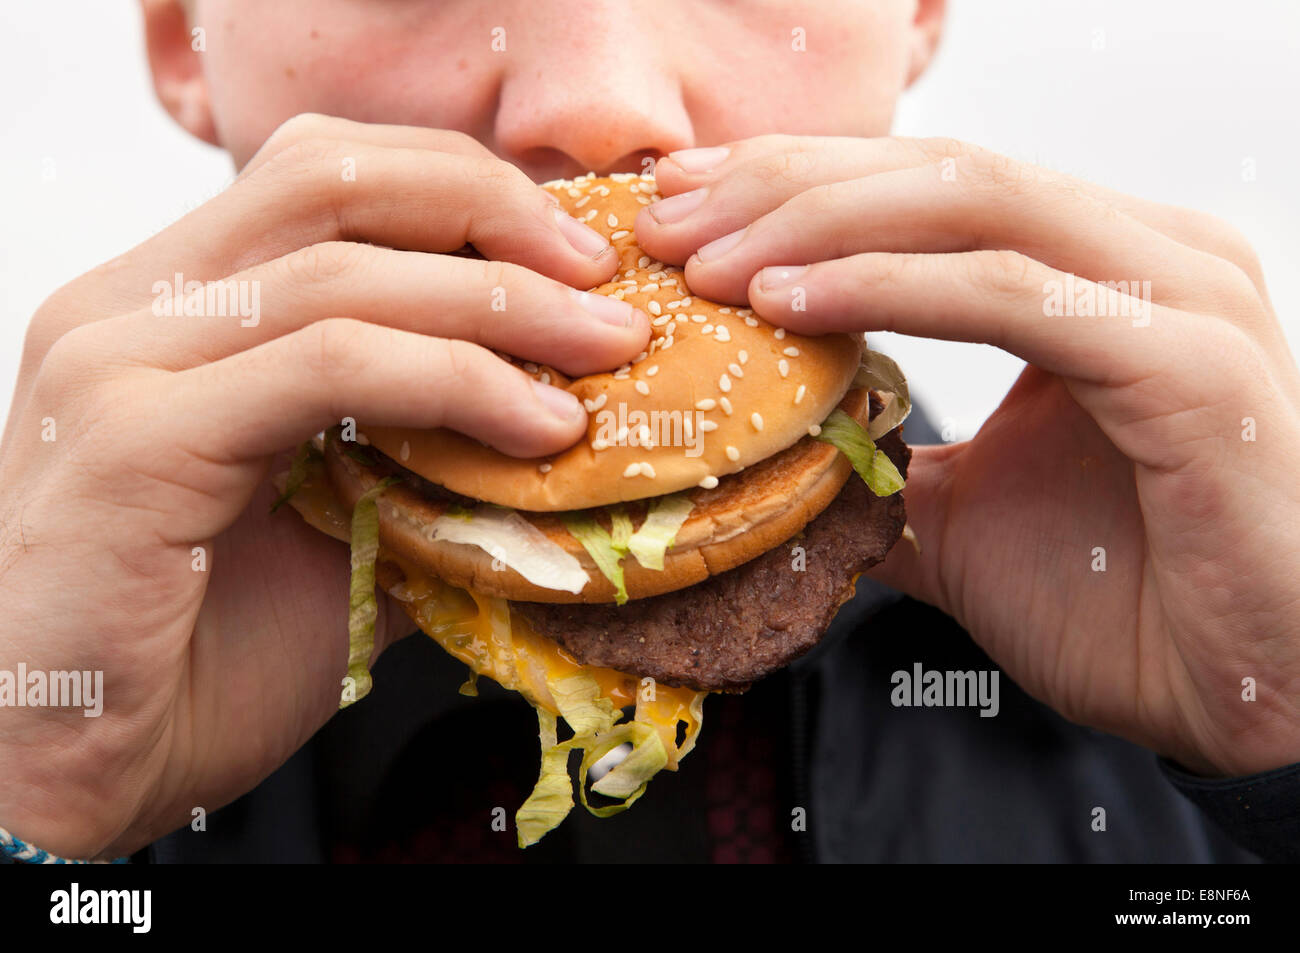 A teenager eating a McDonald's Big Mac burger. Stock Photo